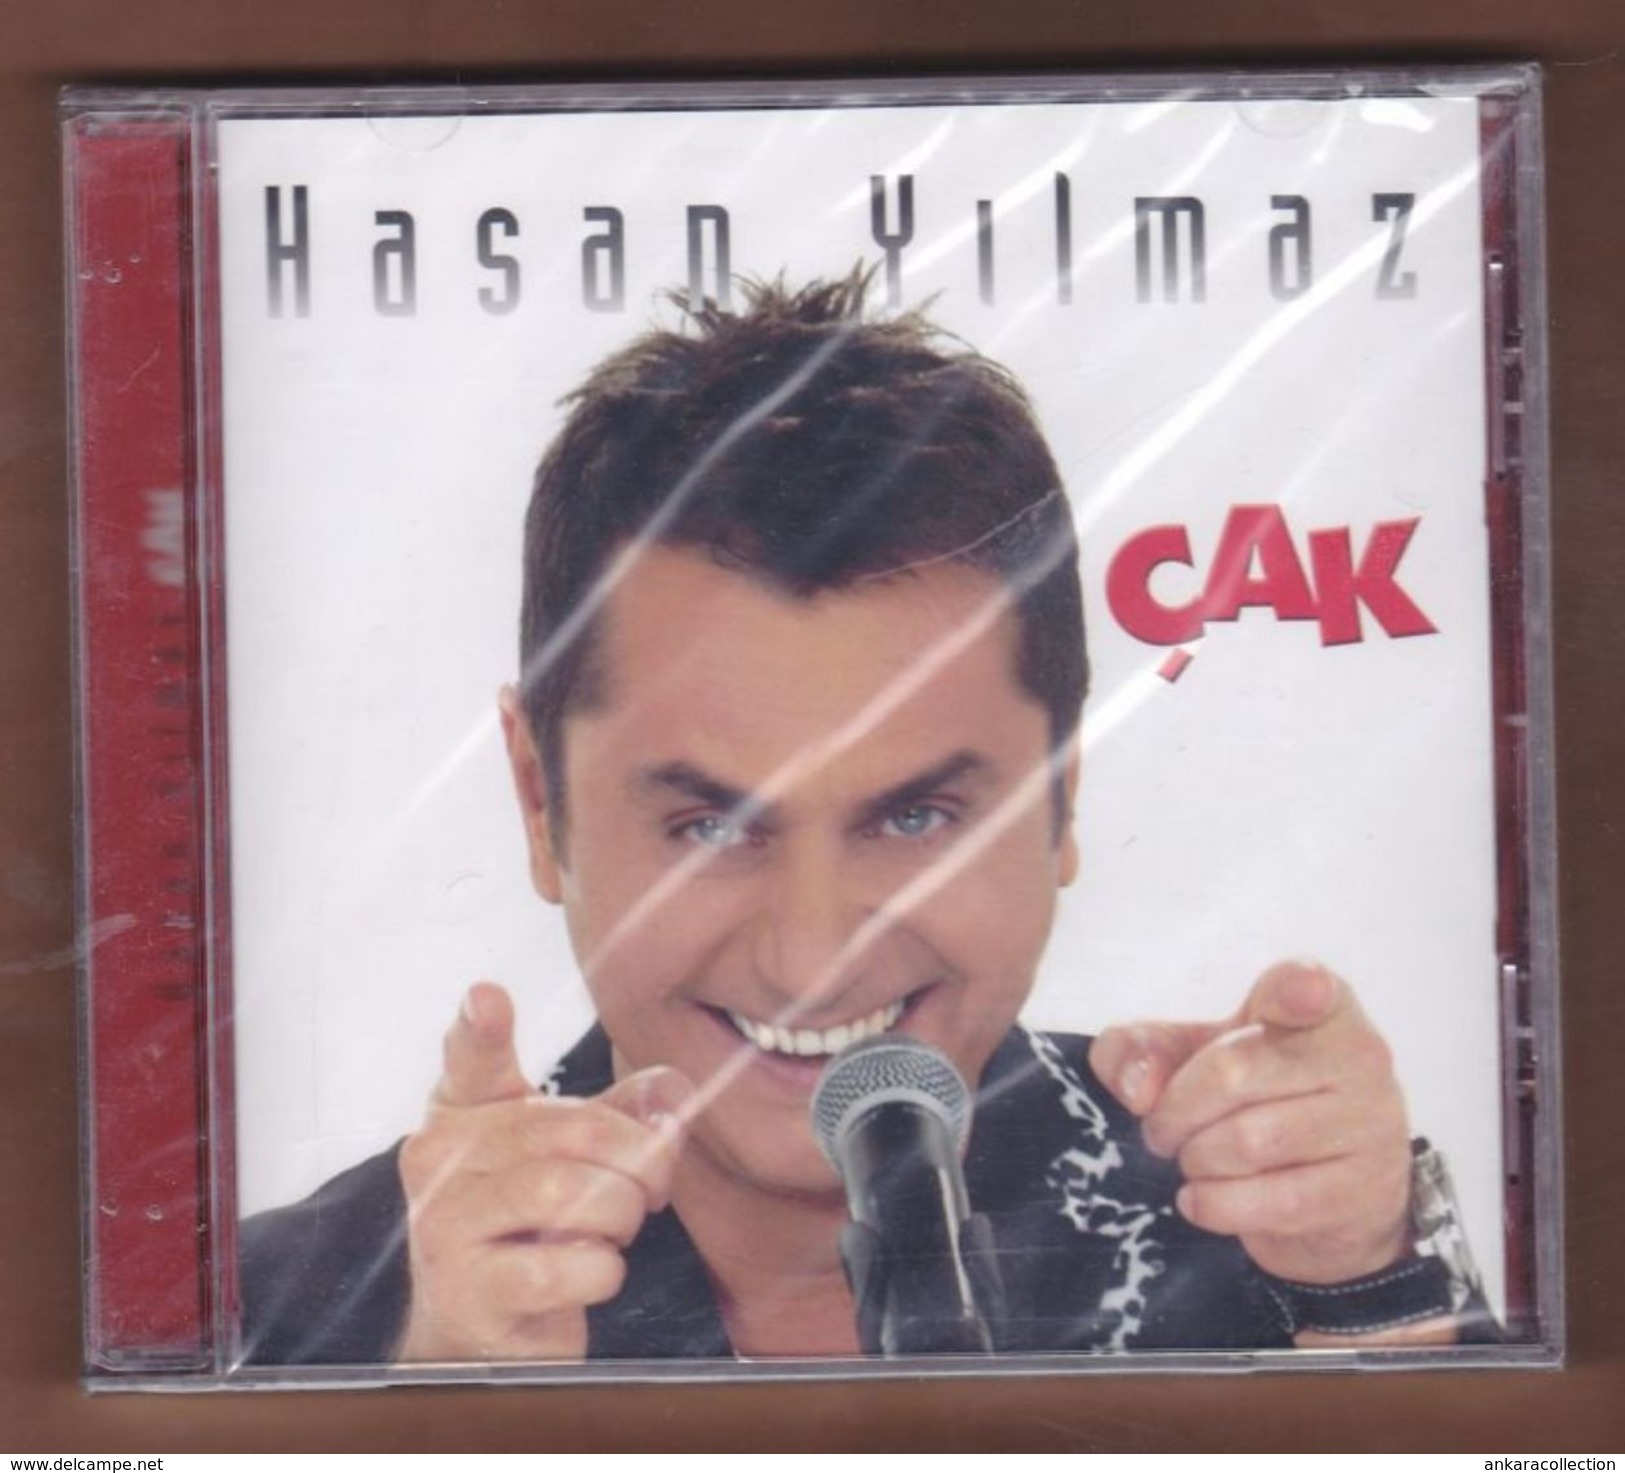 AC -  Hasan Yılmaz çak BRAND NEW TURKISH MUSIC CD - World Music